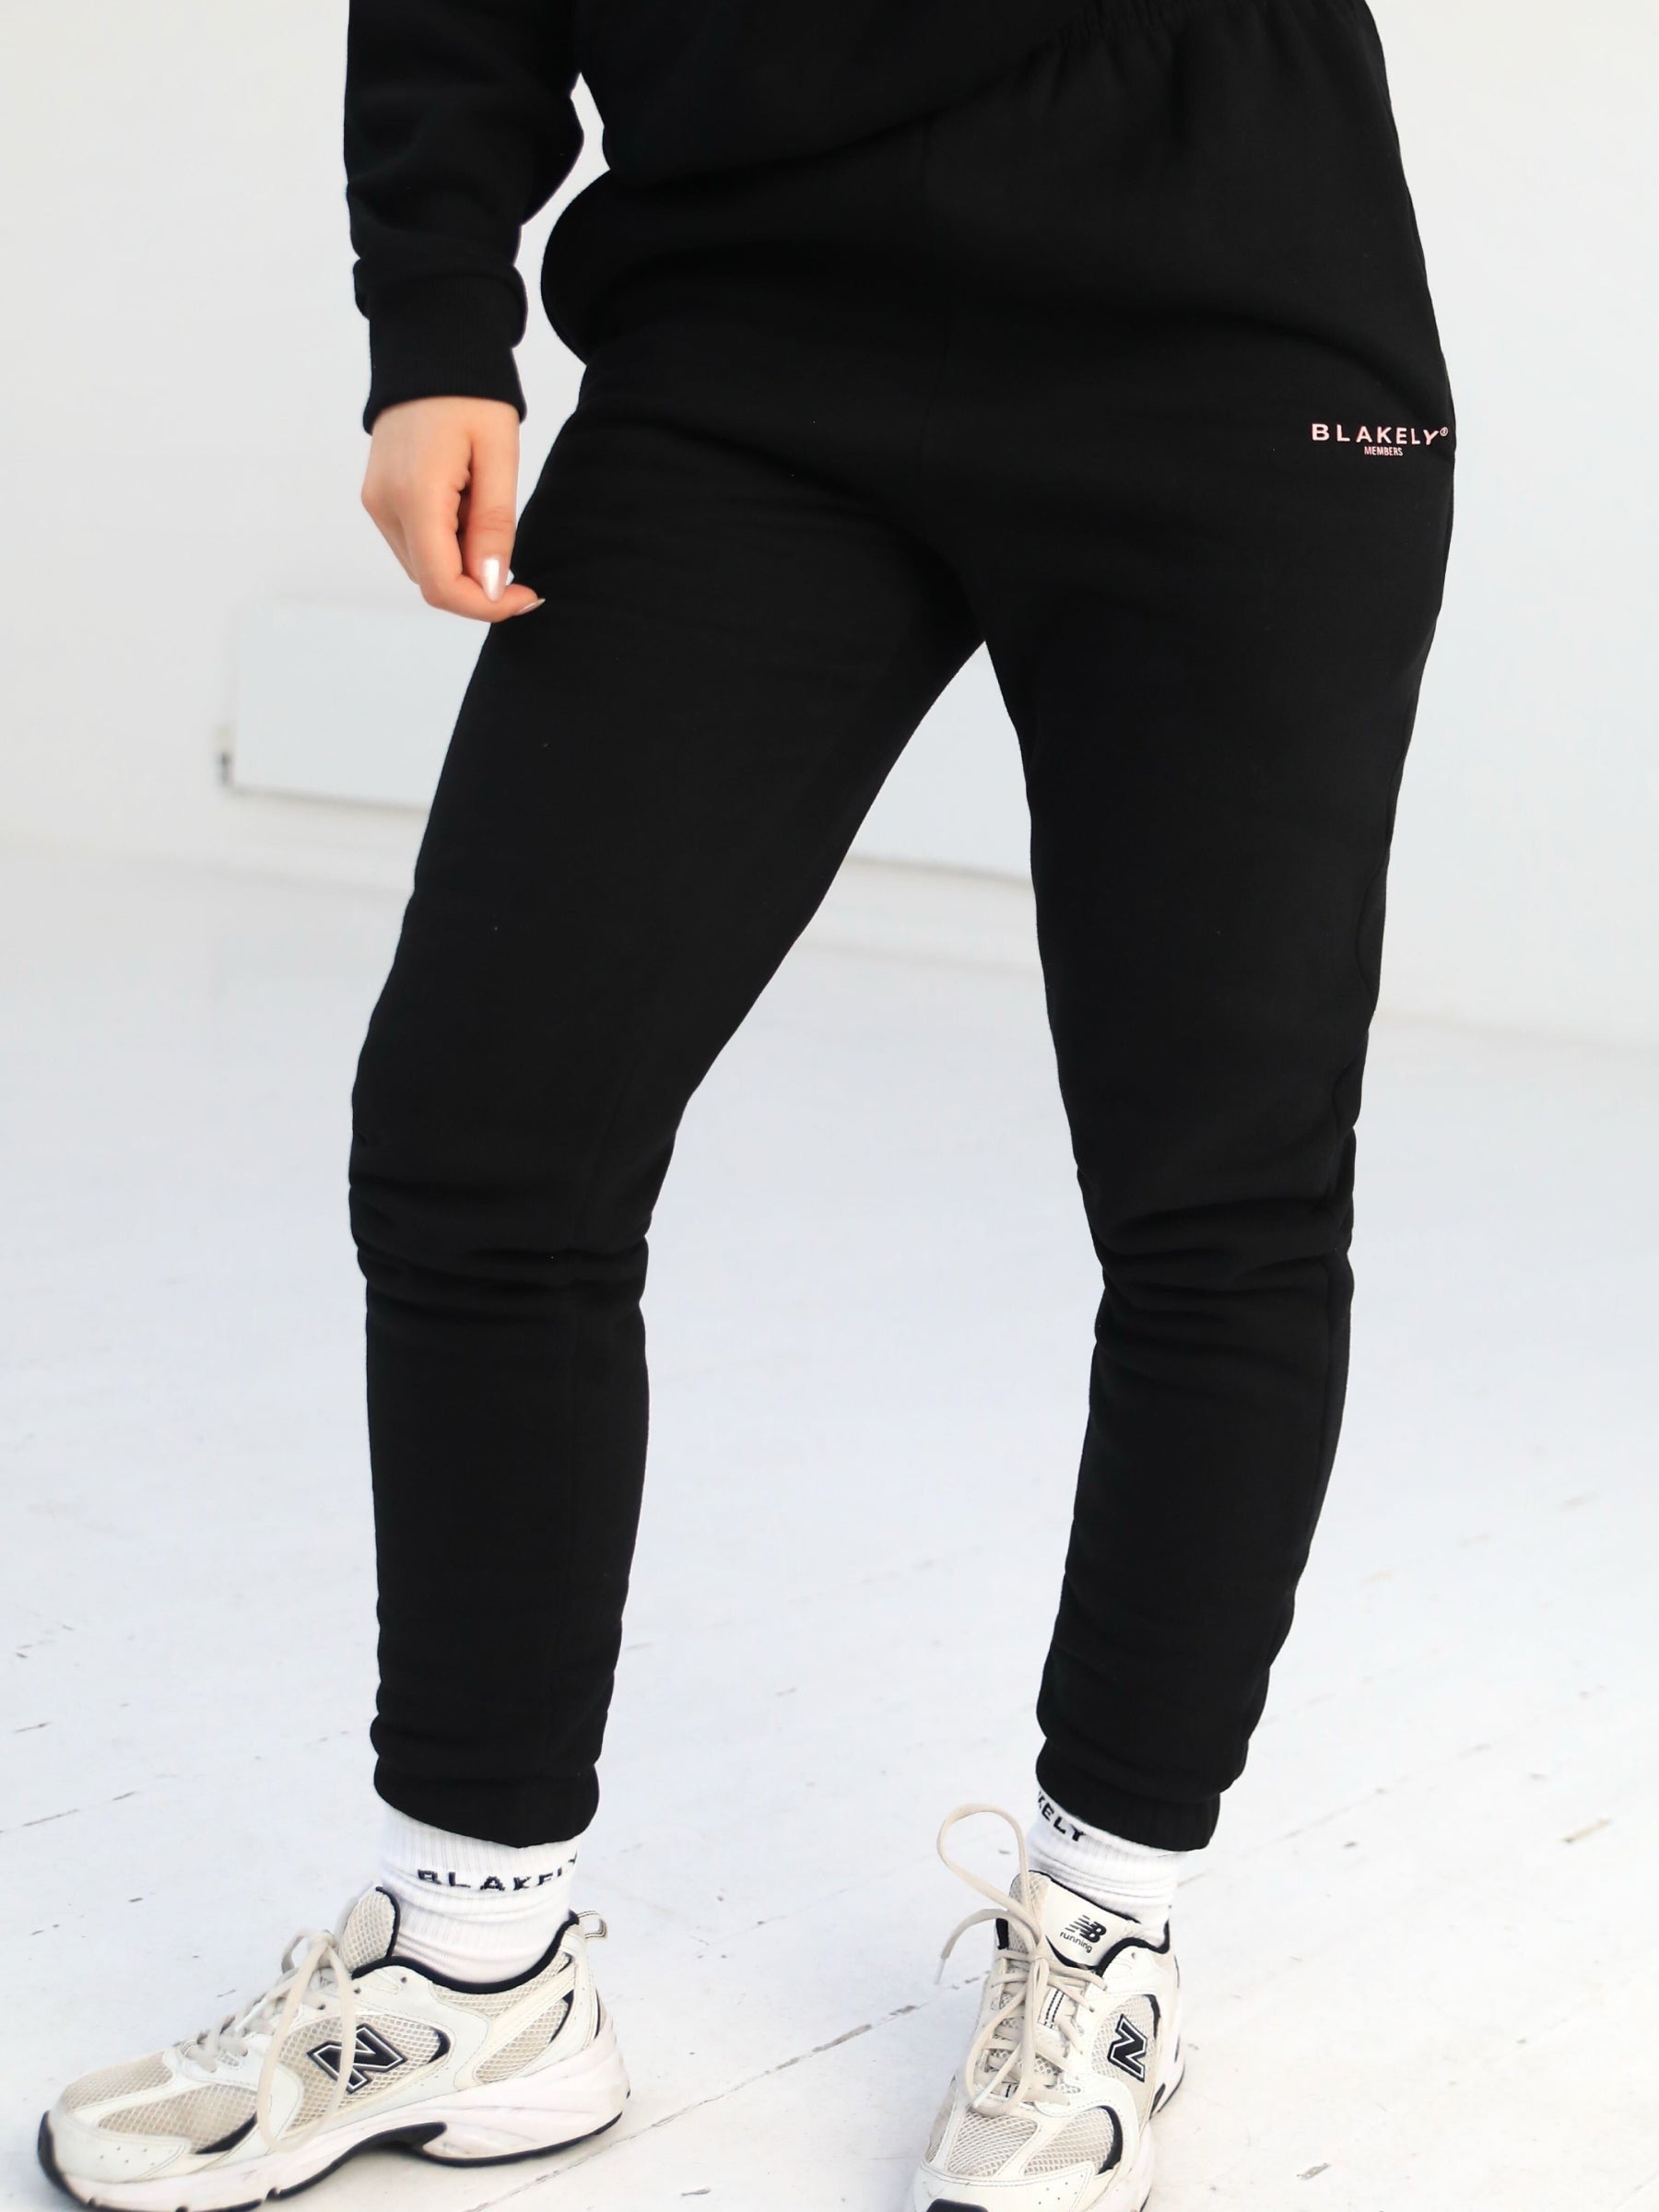 Buy Blakely Women's Members Black & Pink Sweatpants – Blakely Clothing